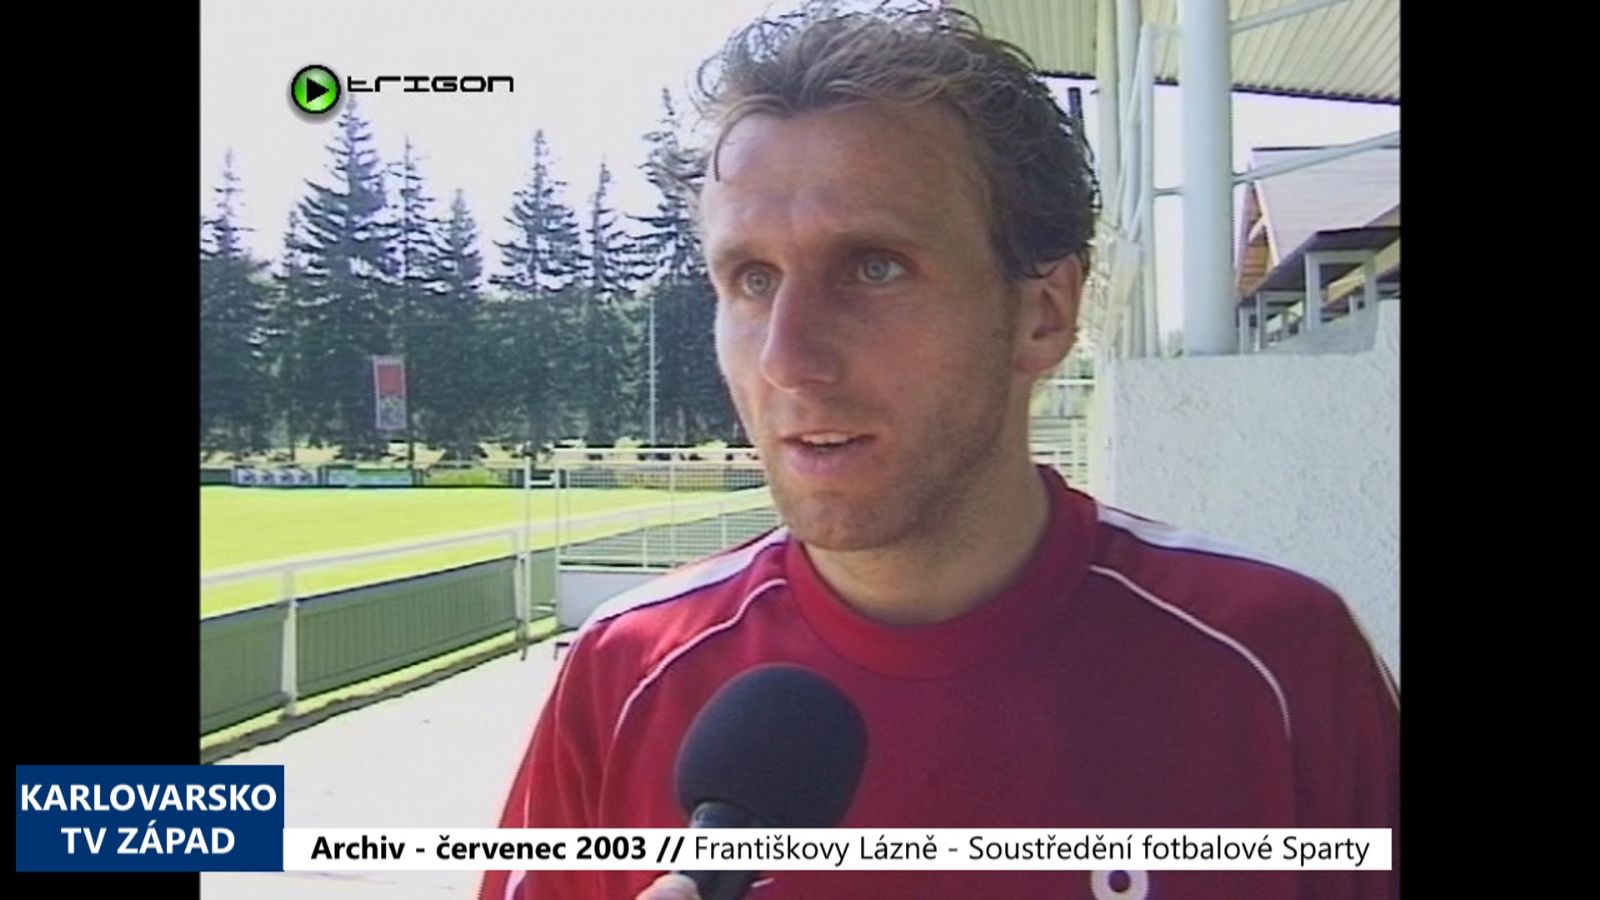 2003 – Františkovy Lázně - Soustředění fotbalové Sparty (TV Západ)